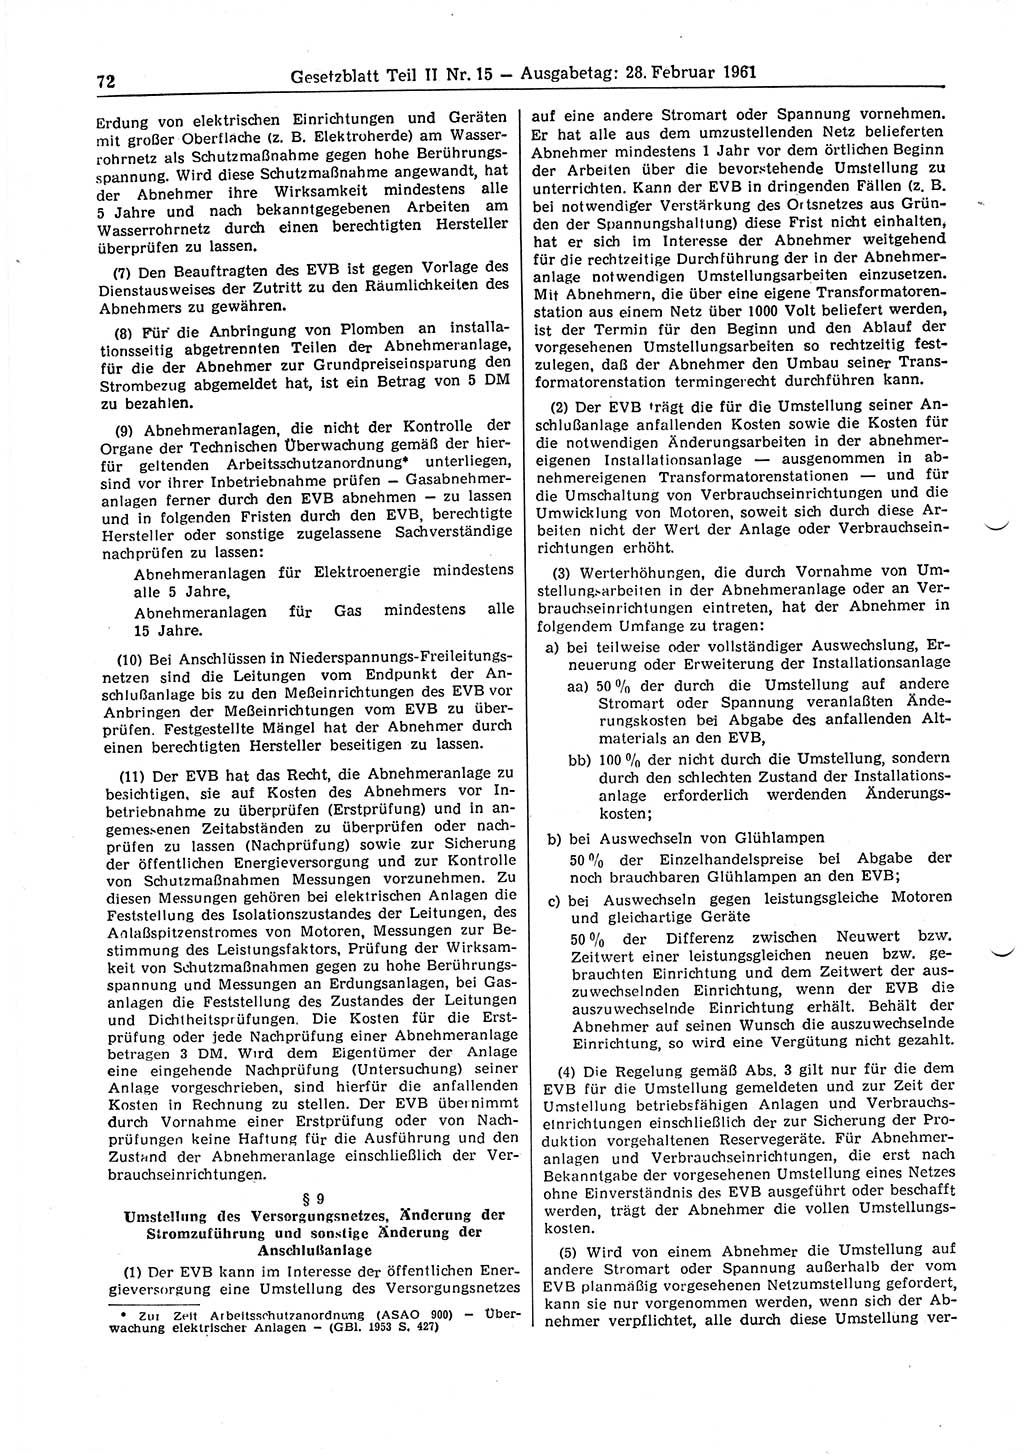 Gesetzblatt (GBl.) der Deutschen Demokratischen Republik (DDR) Teil ⅠⅠ 1961, Seite 72 (GBl. DDR ⅠⅠ 1961, S. 72)